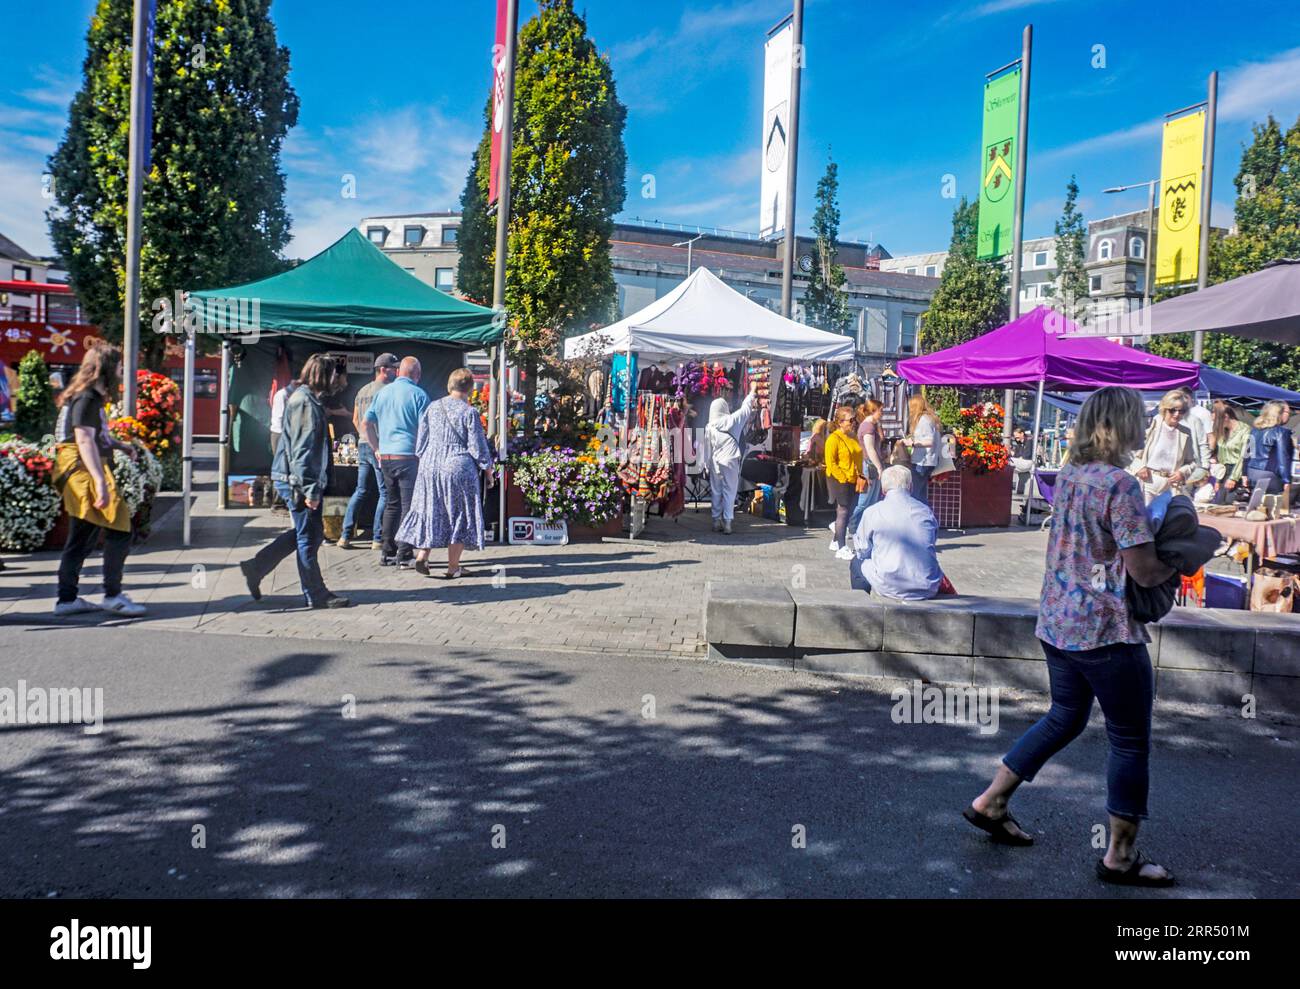 Der kleine Händlermarkt auf dem Eyre Square in Galway, Irland. Jeden Samstag findet eine große Auswahl an Handwerkskunst und Lebensmitteln statt. Stockfoto